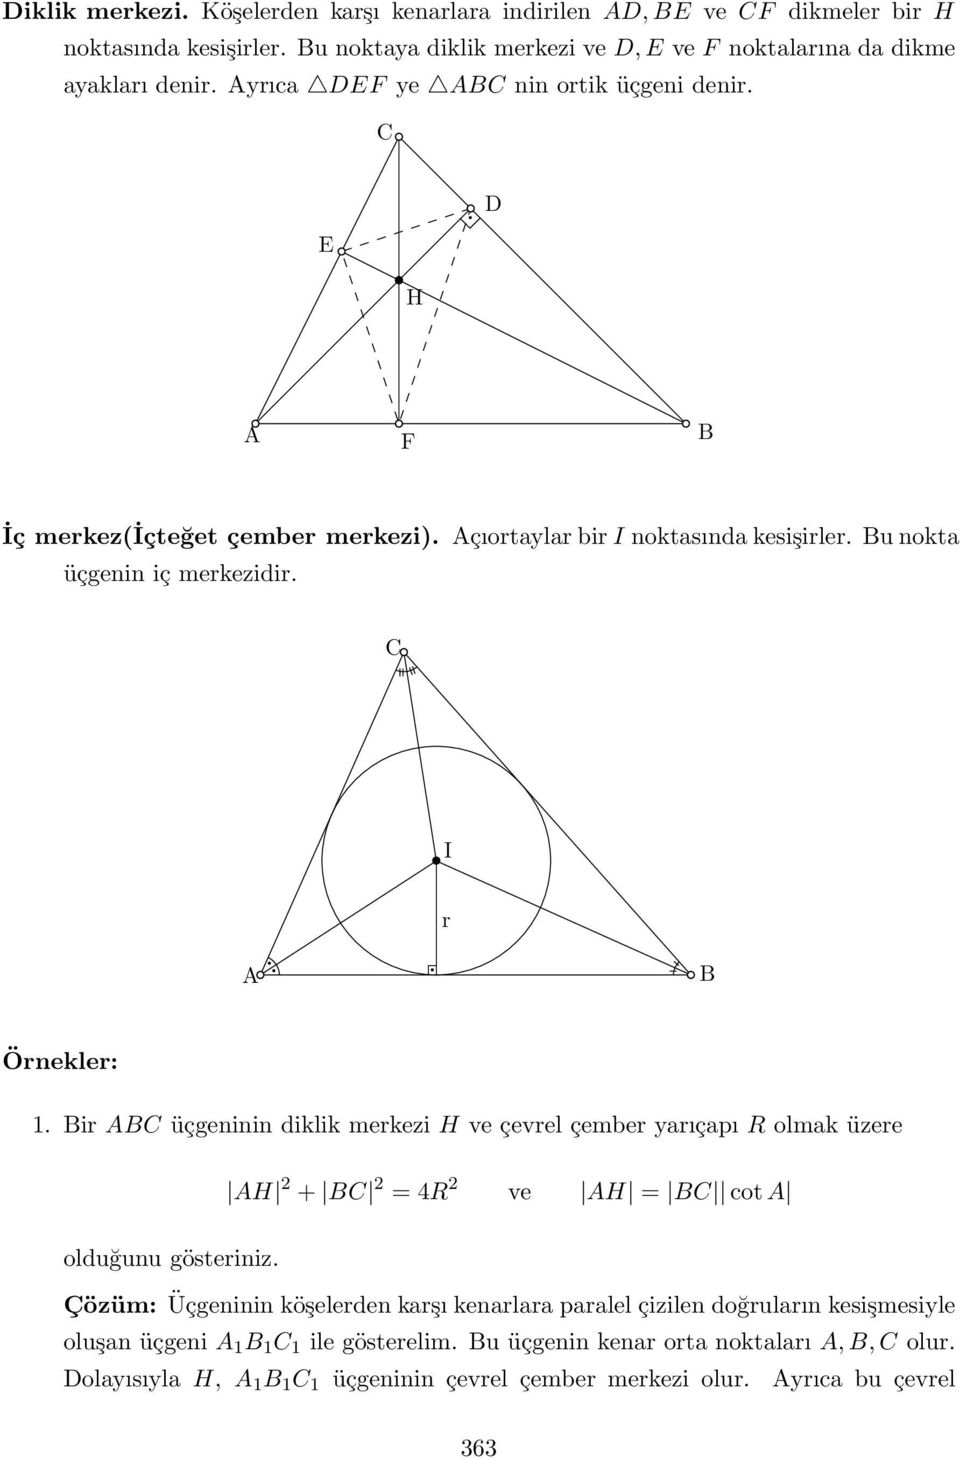 Bir ABC üçgeninin diklik merkezi H ve çevrel çember yarıçapı R olmak üzere AH + BC = 4R ve AH = BC cot A olduğunu gösteriniz.